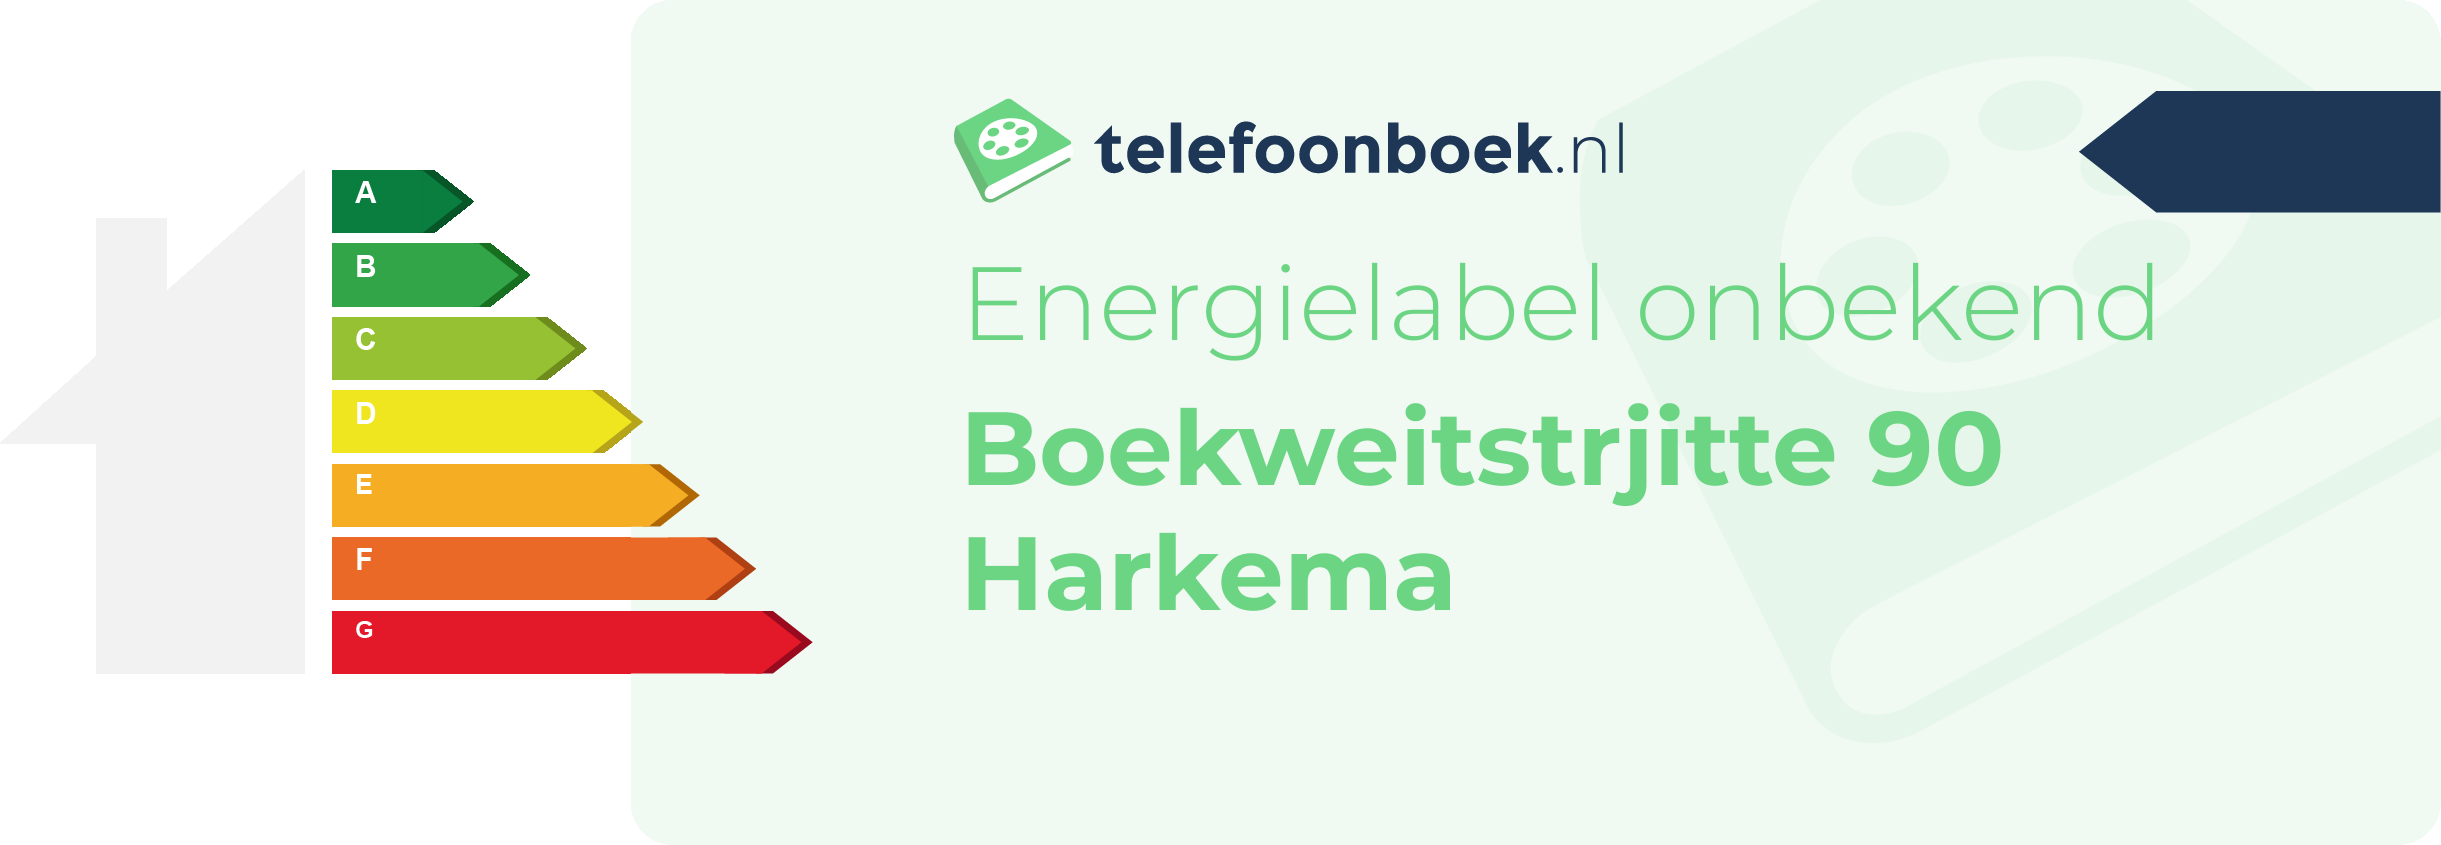 Energielabel Boekweitstrjitte 90 Harkema